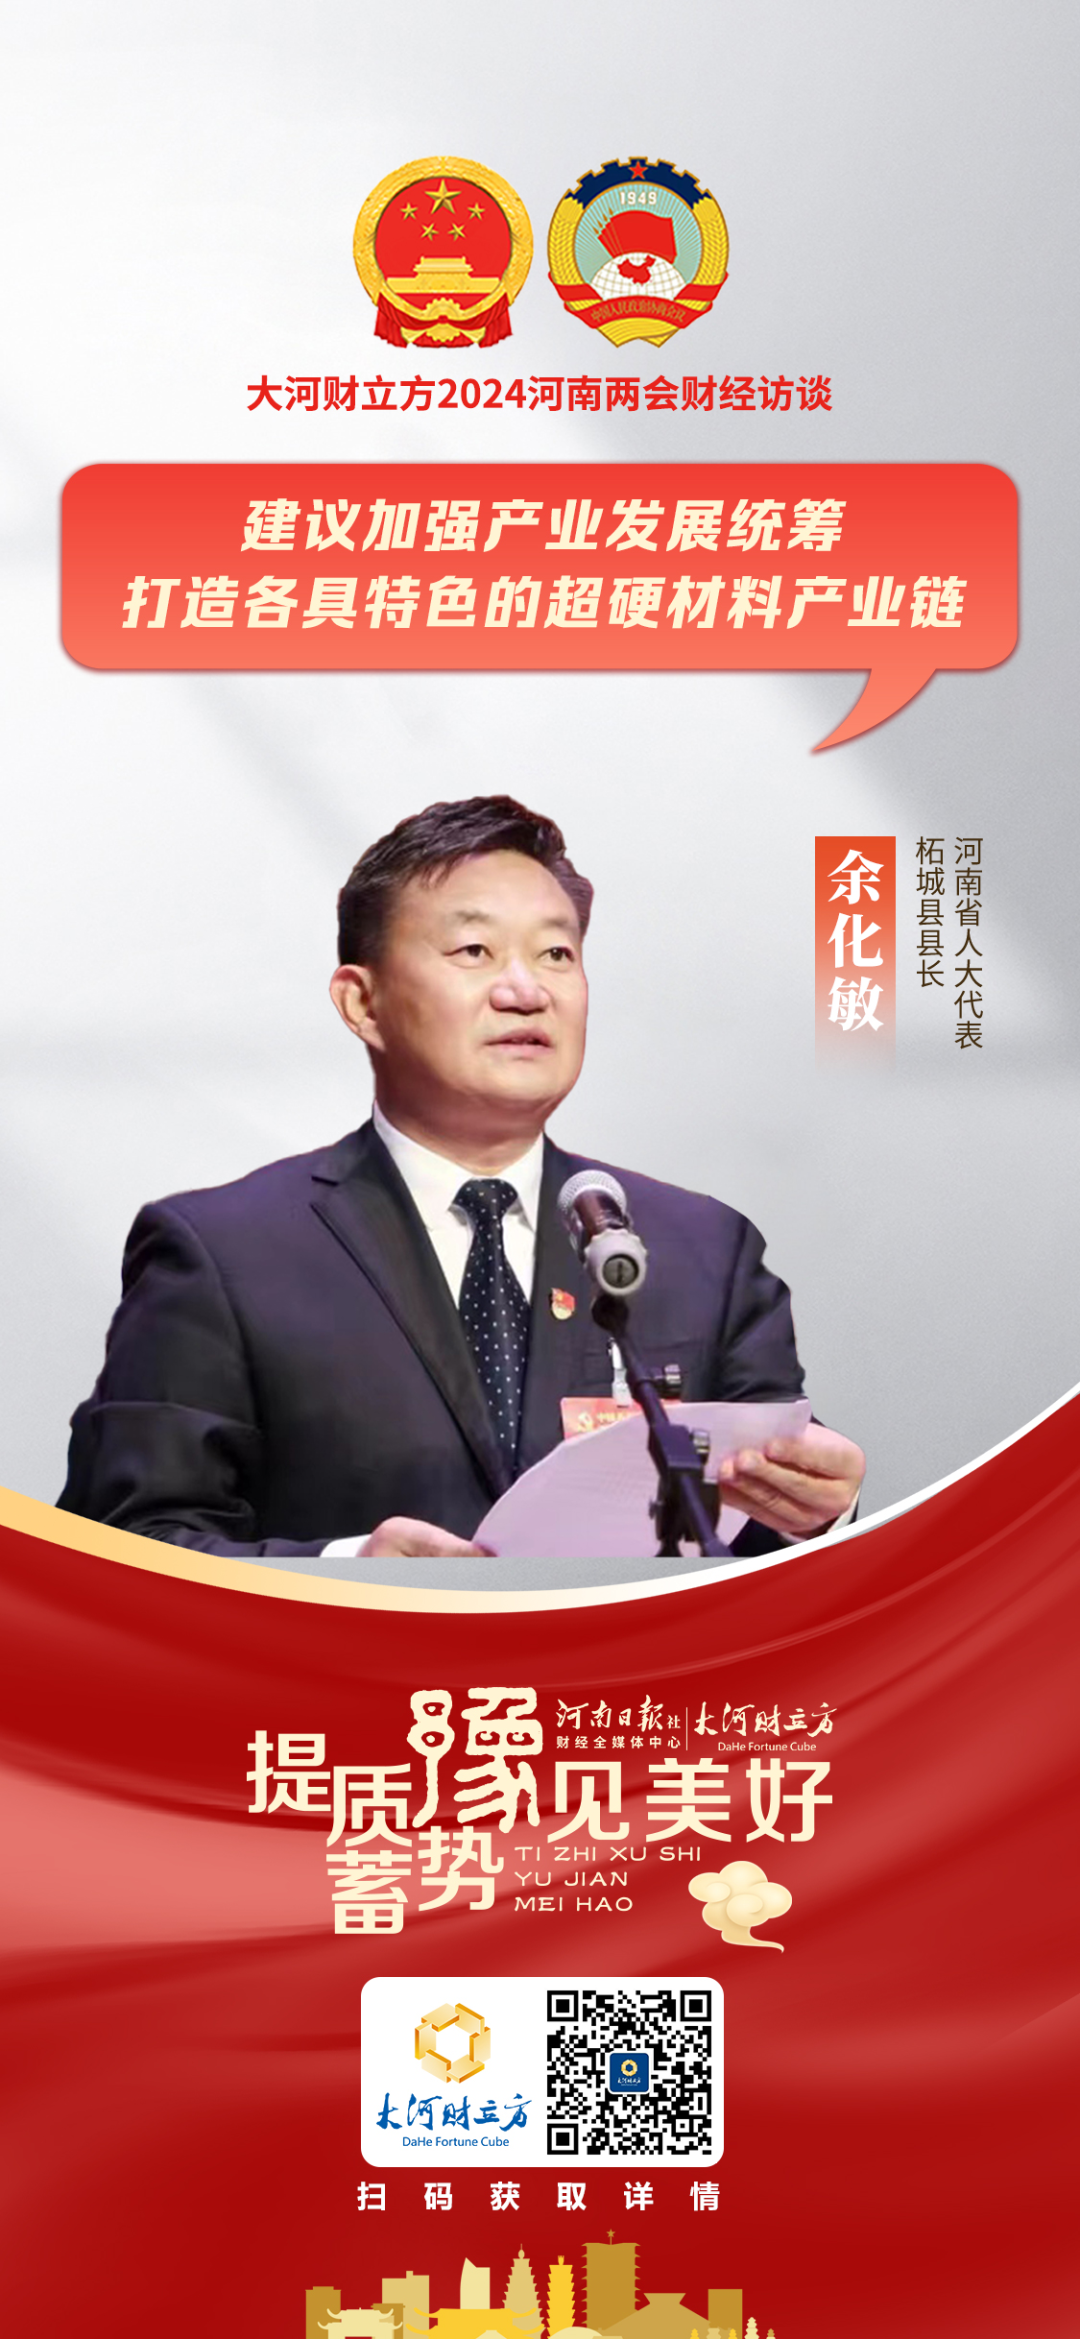 2024年河南省两会期间,人大代表,柘城县县长余化敏带来了两项建议:一